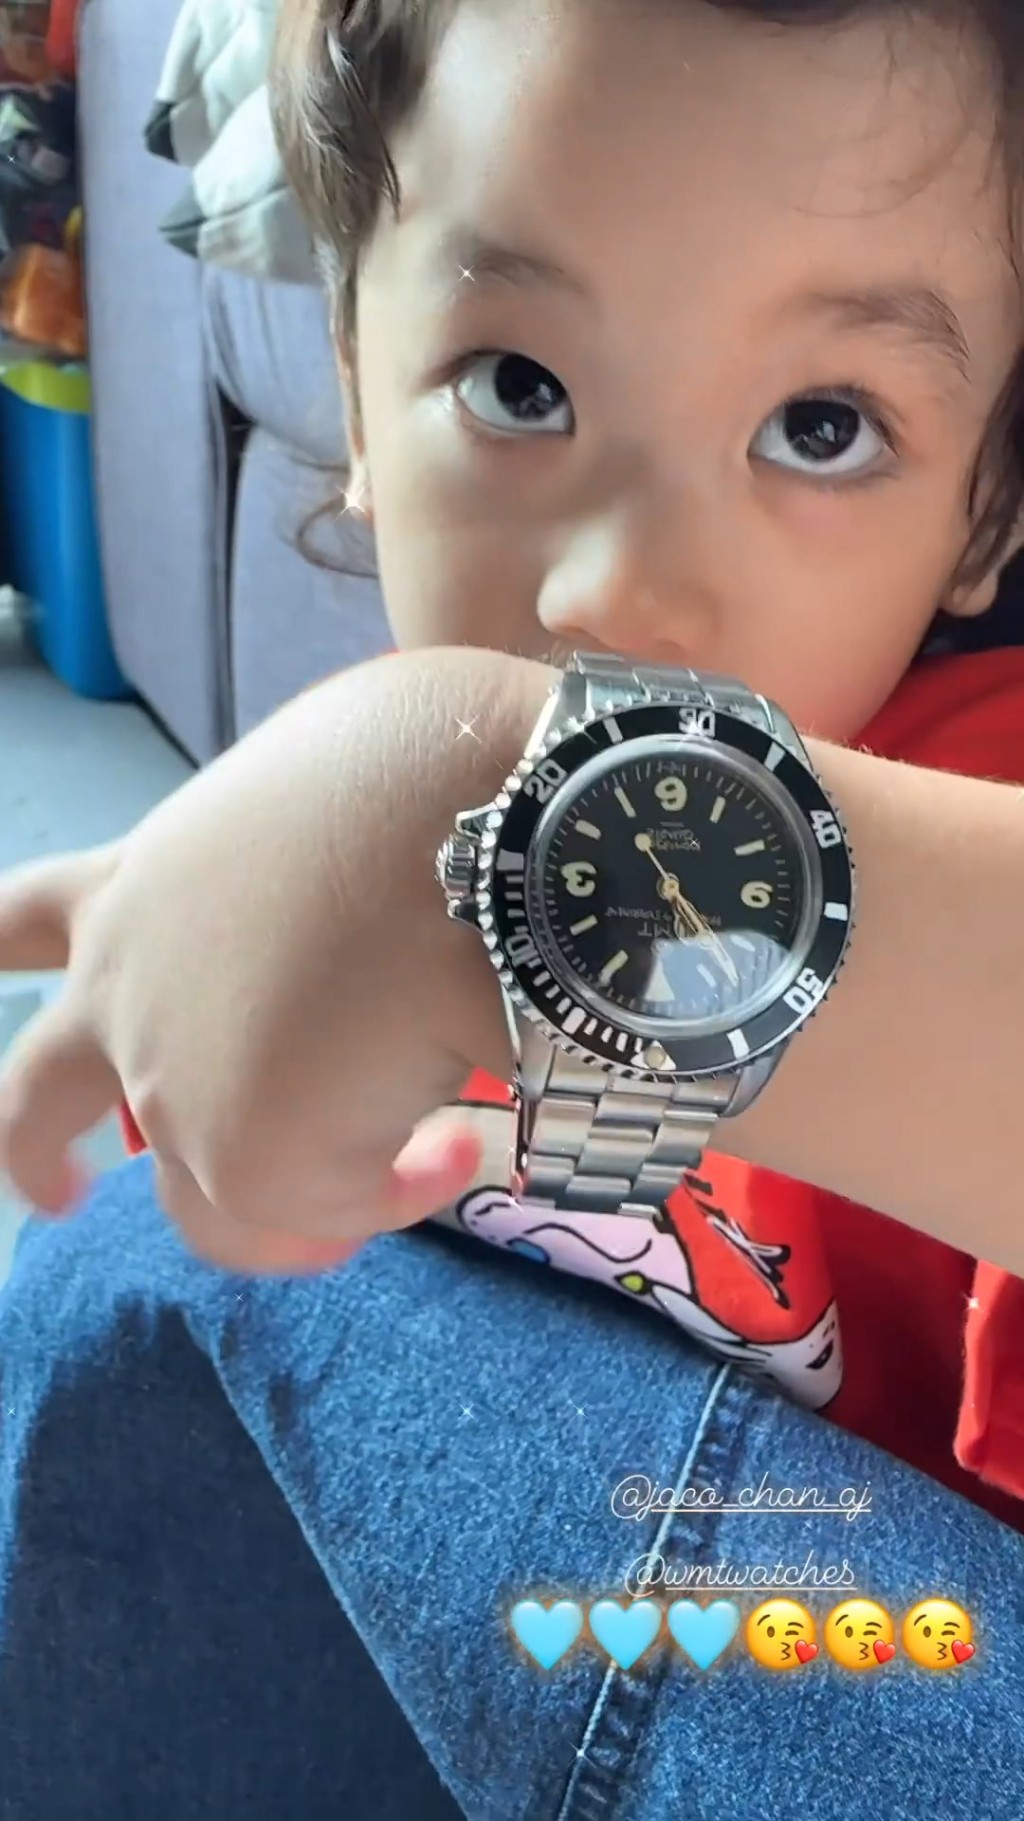 翻查網上資料，該童裝鋼錶價值逾3千港元。